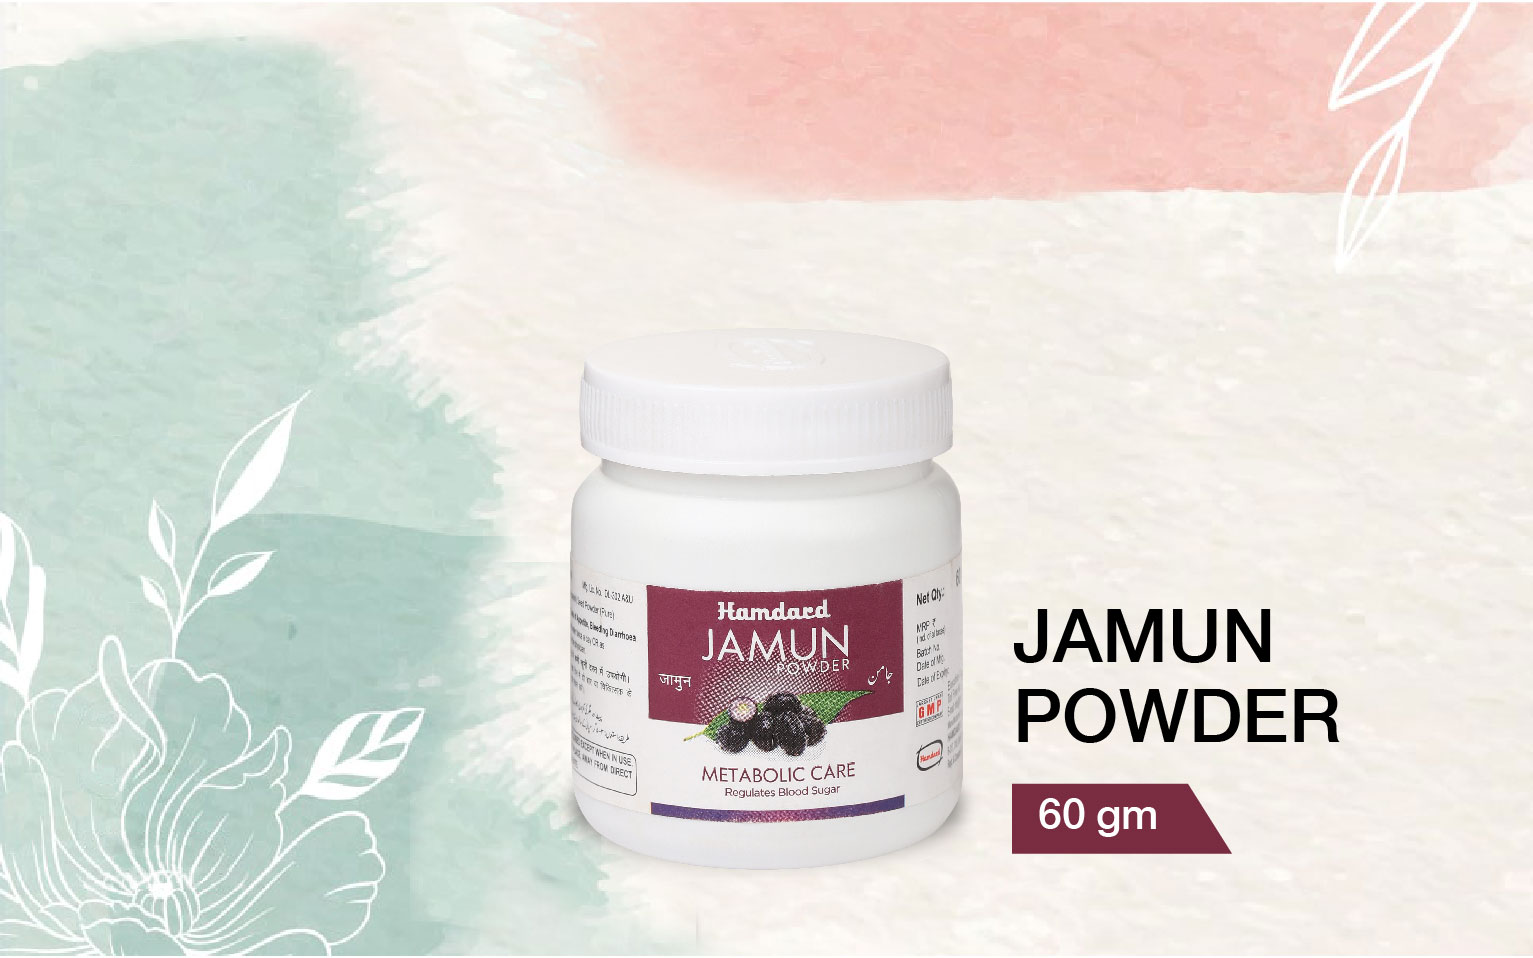 Jamun powder